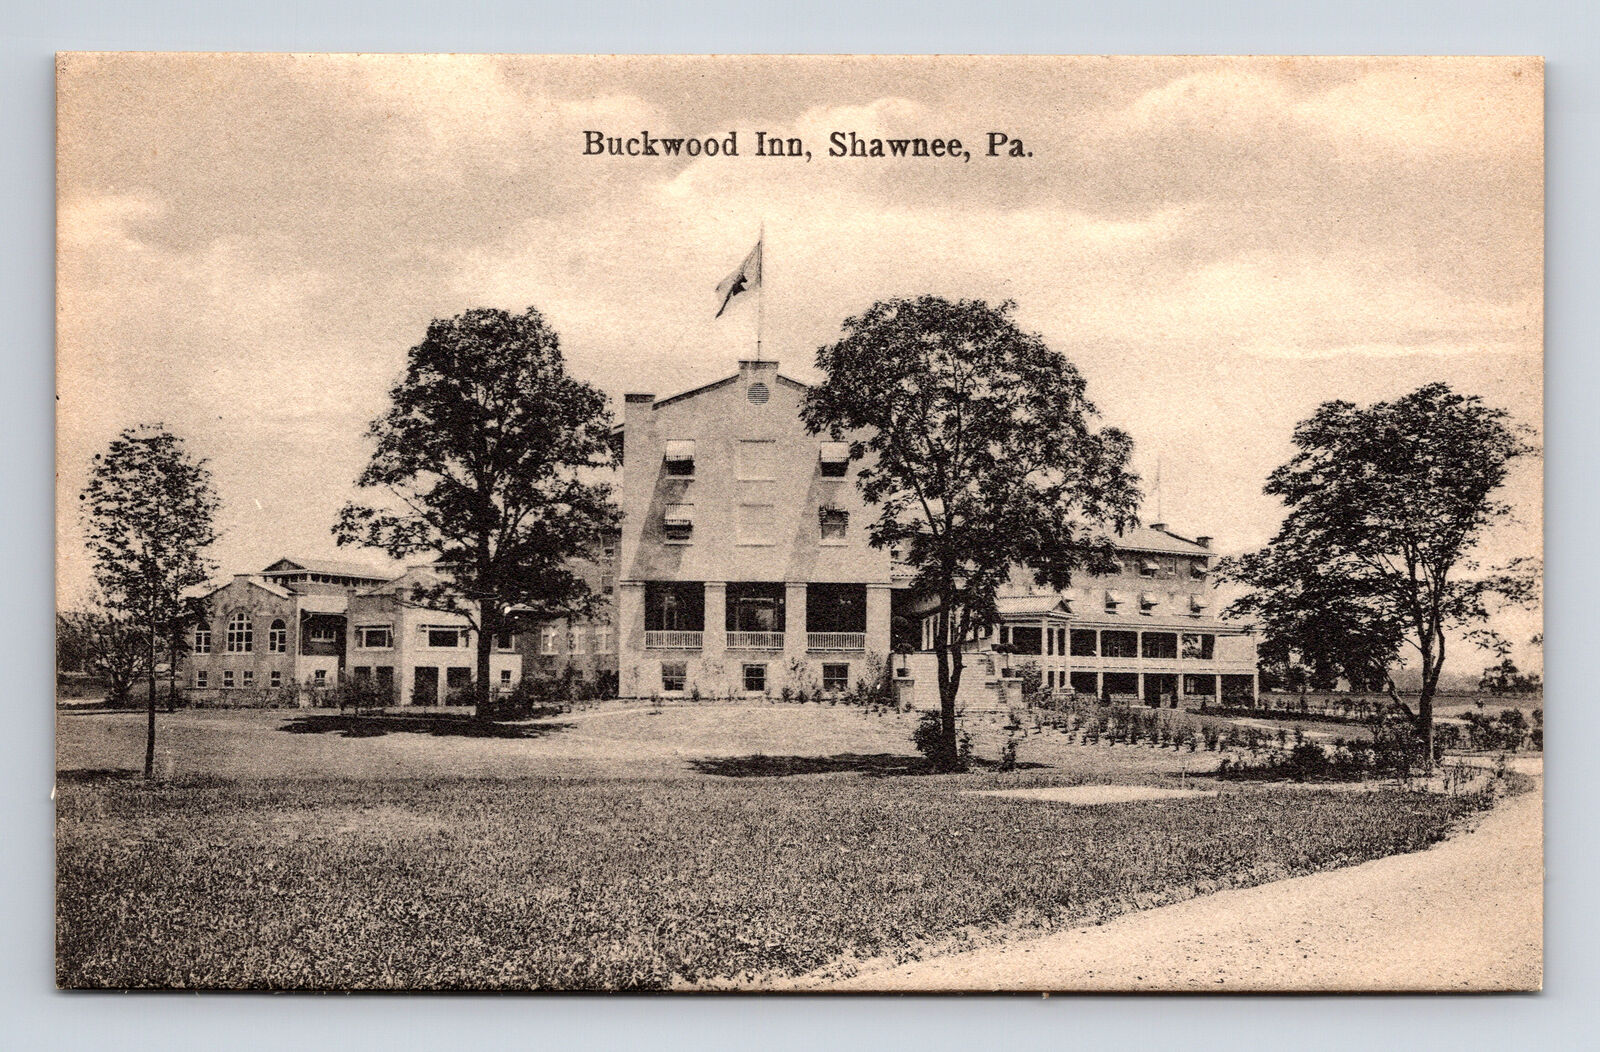 Shawnee-On-Delaware PA Buckwood Inn Hotel Postcard